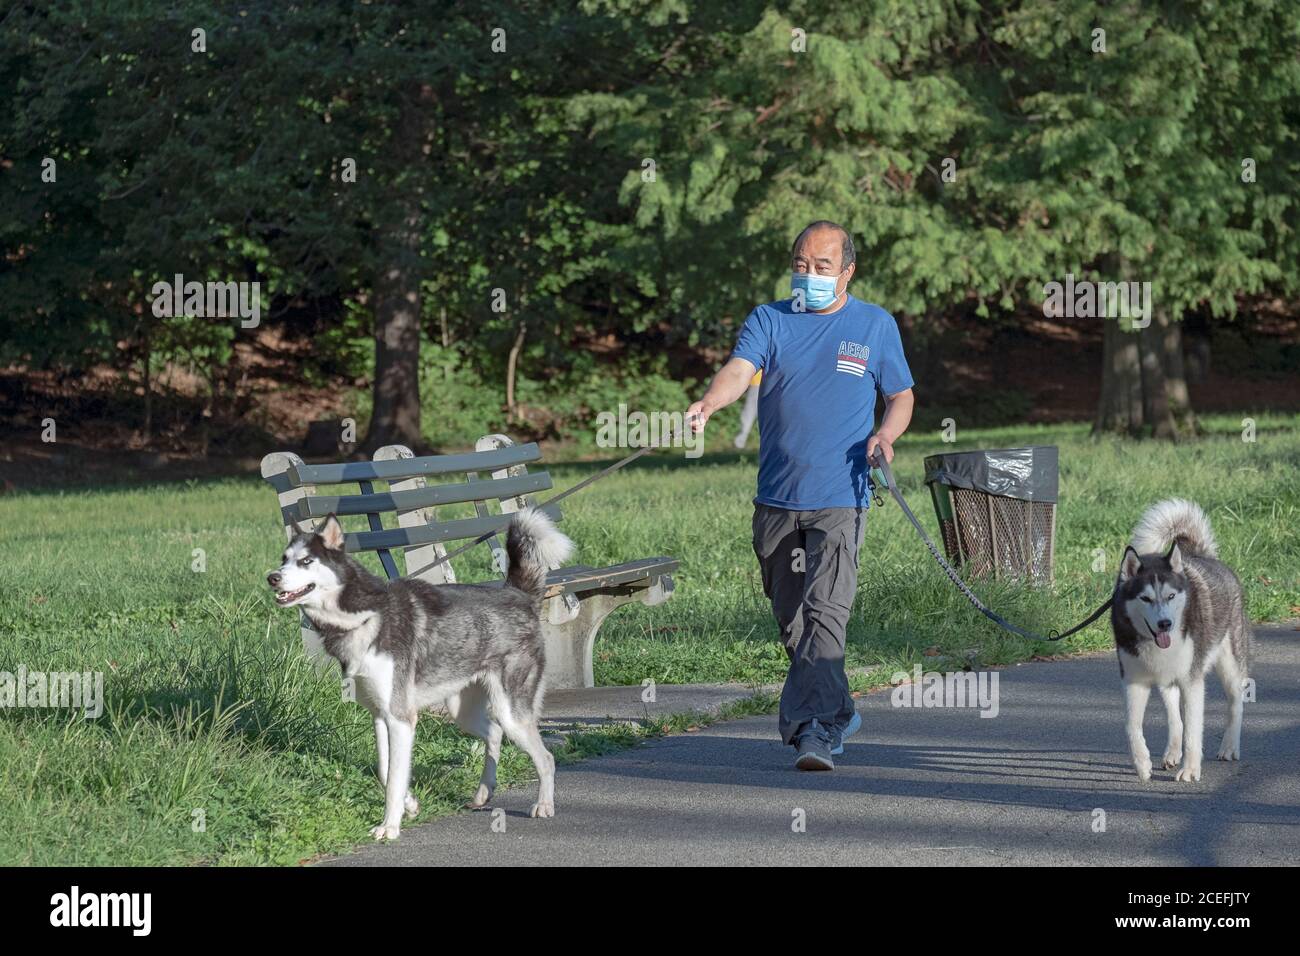 Ein asiatischer Amerikaner mit einer OP-Maske geht mit seinen 2 Husky-Hunden auf einem Weg am See in einem Park in Flushing, Queens, New York City/ Stockfoto